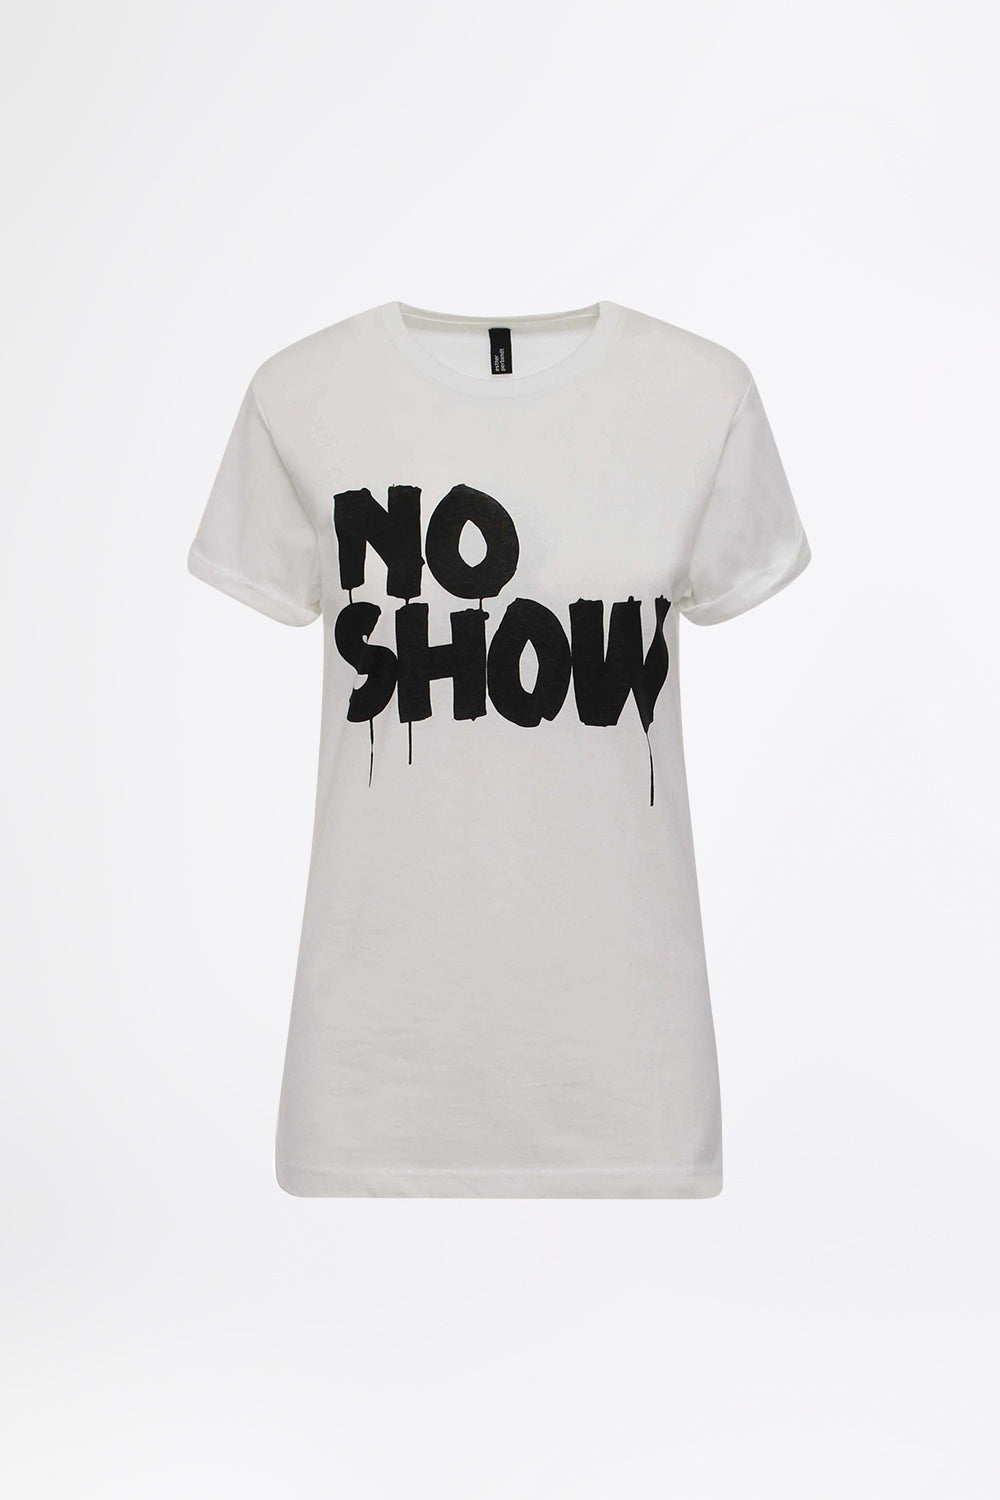 NO SHOW White - Statement T-shirt